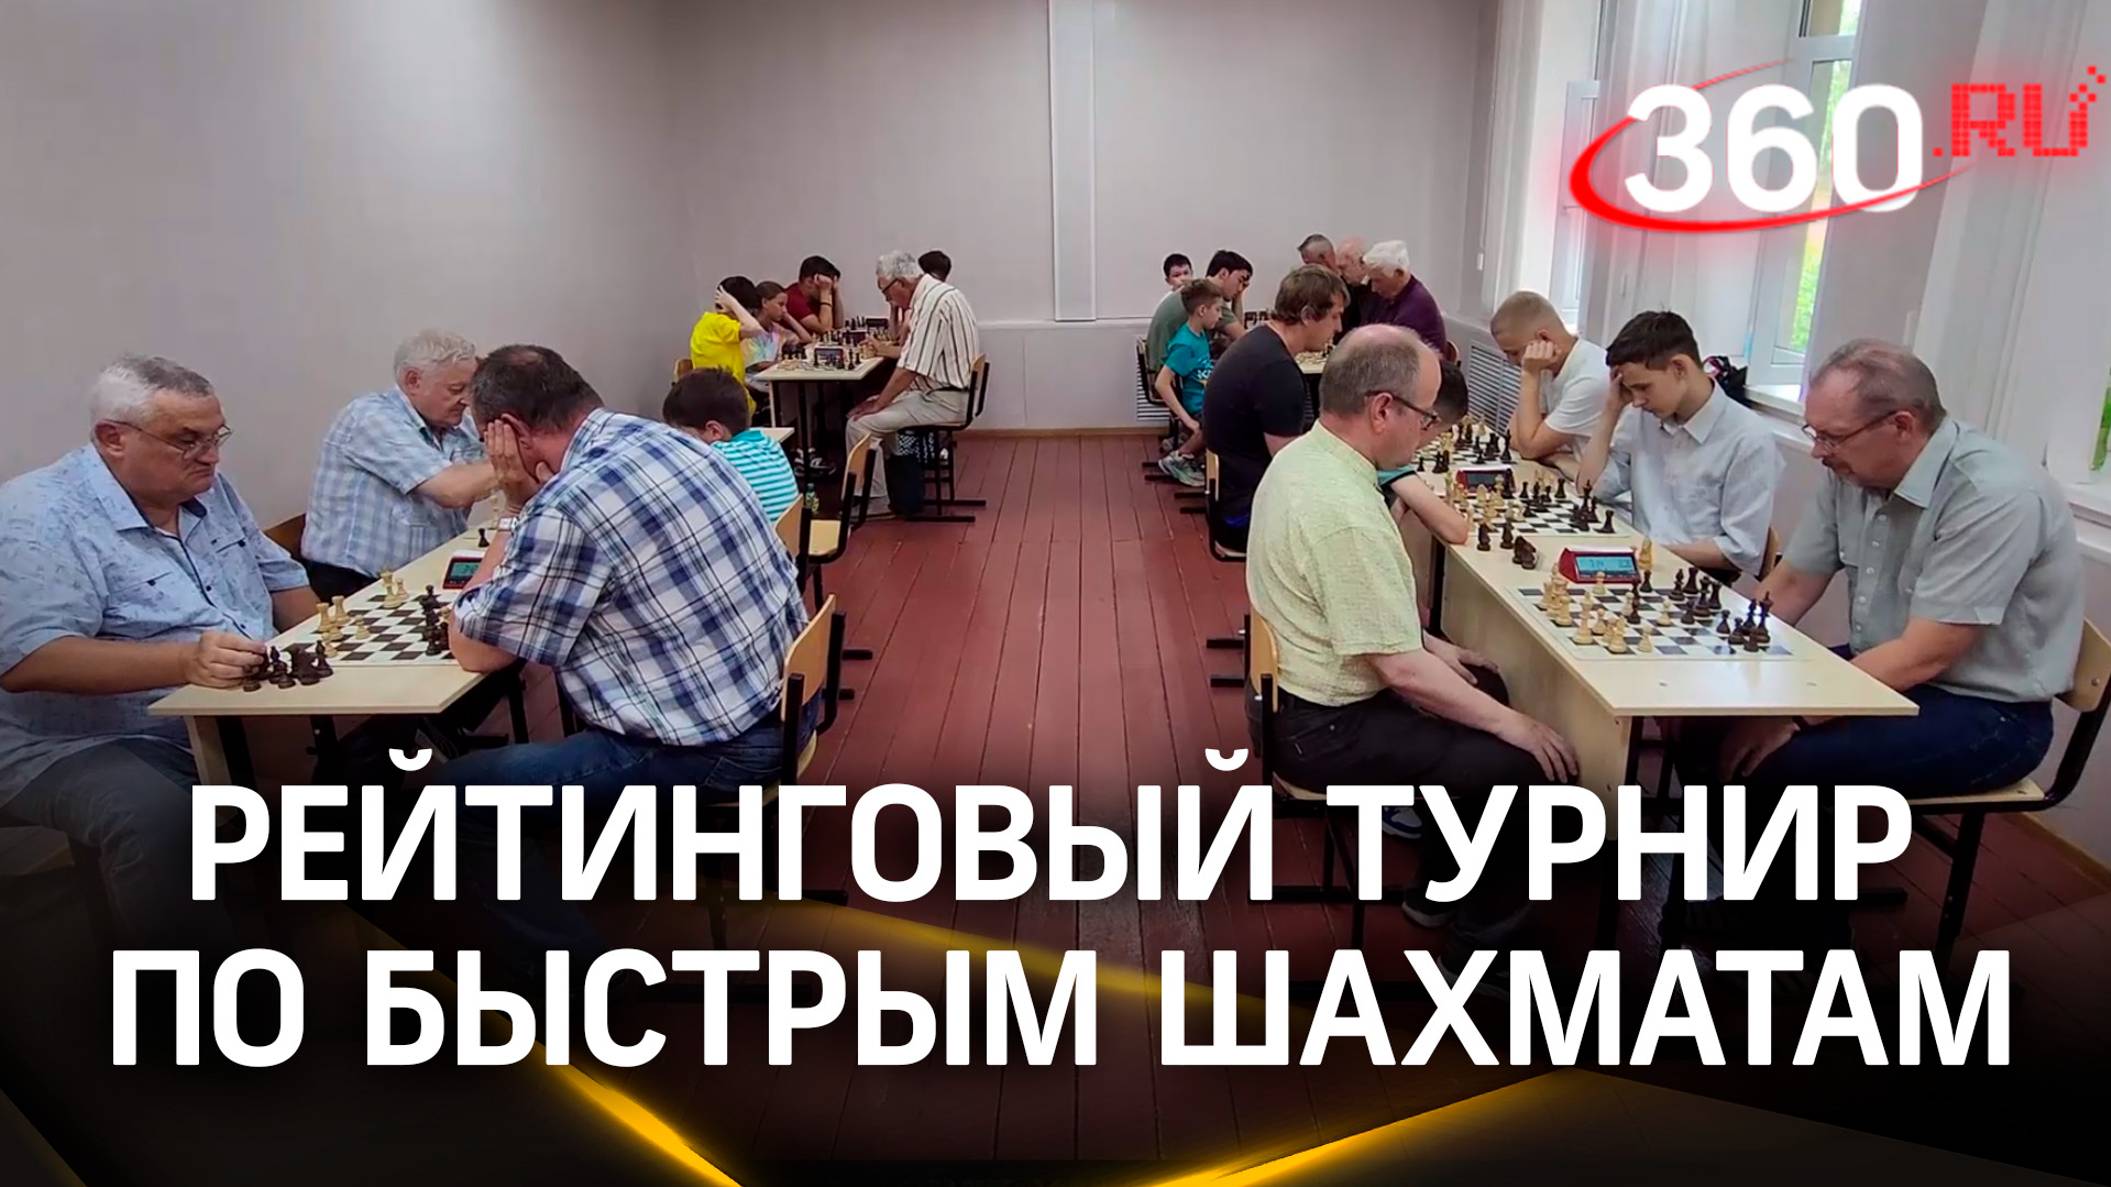 «Гуслицкий рапид»: рейтинговый турнир по быстрым шахматам прошёл в Егорьевске